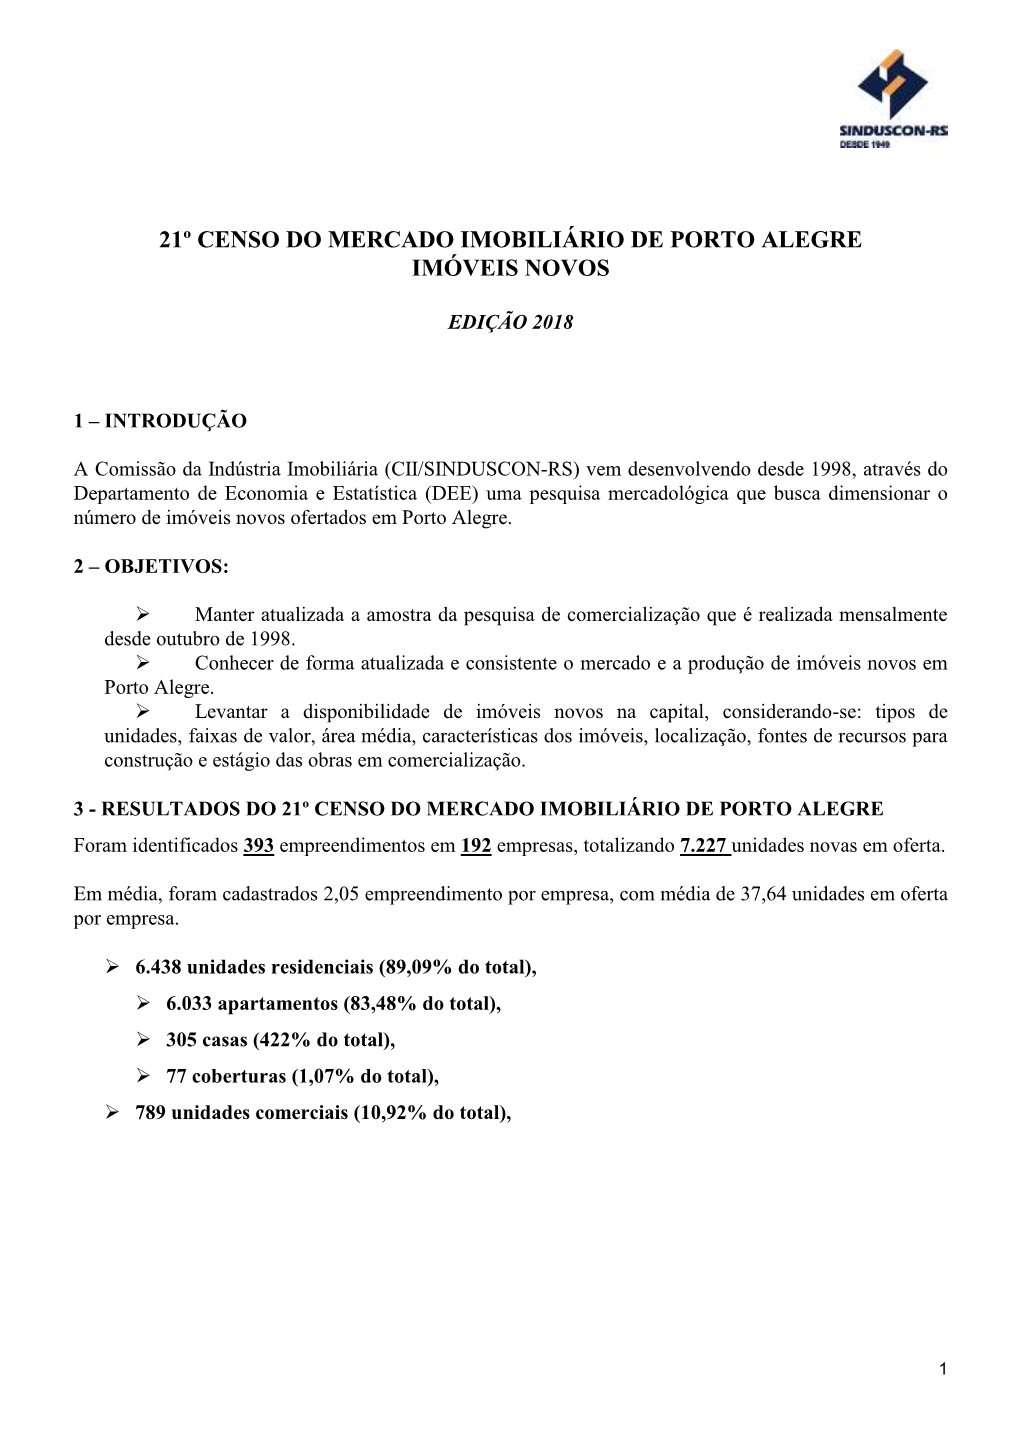 21º Censo Do Mercado Imobiliário De Porto Alegre Imóveis Novos